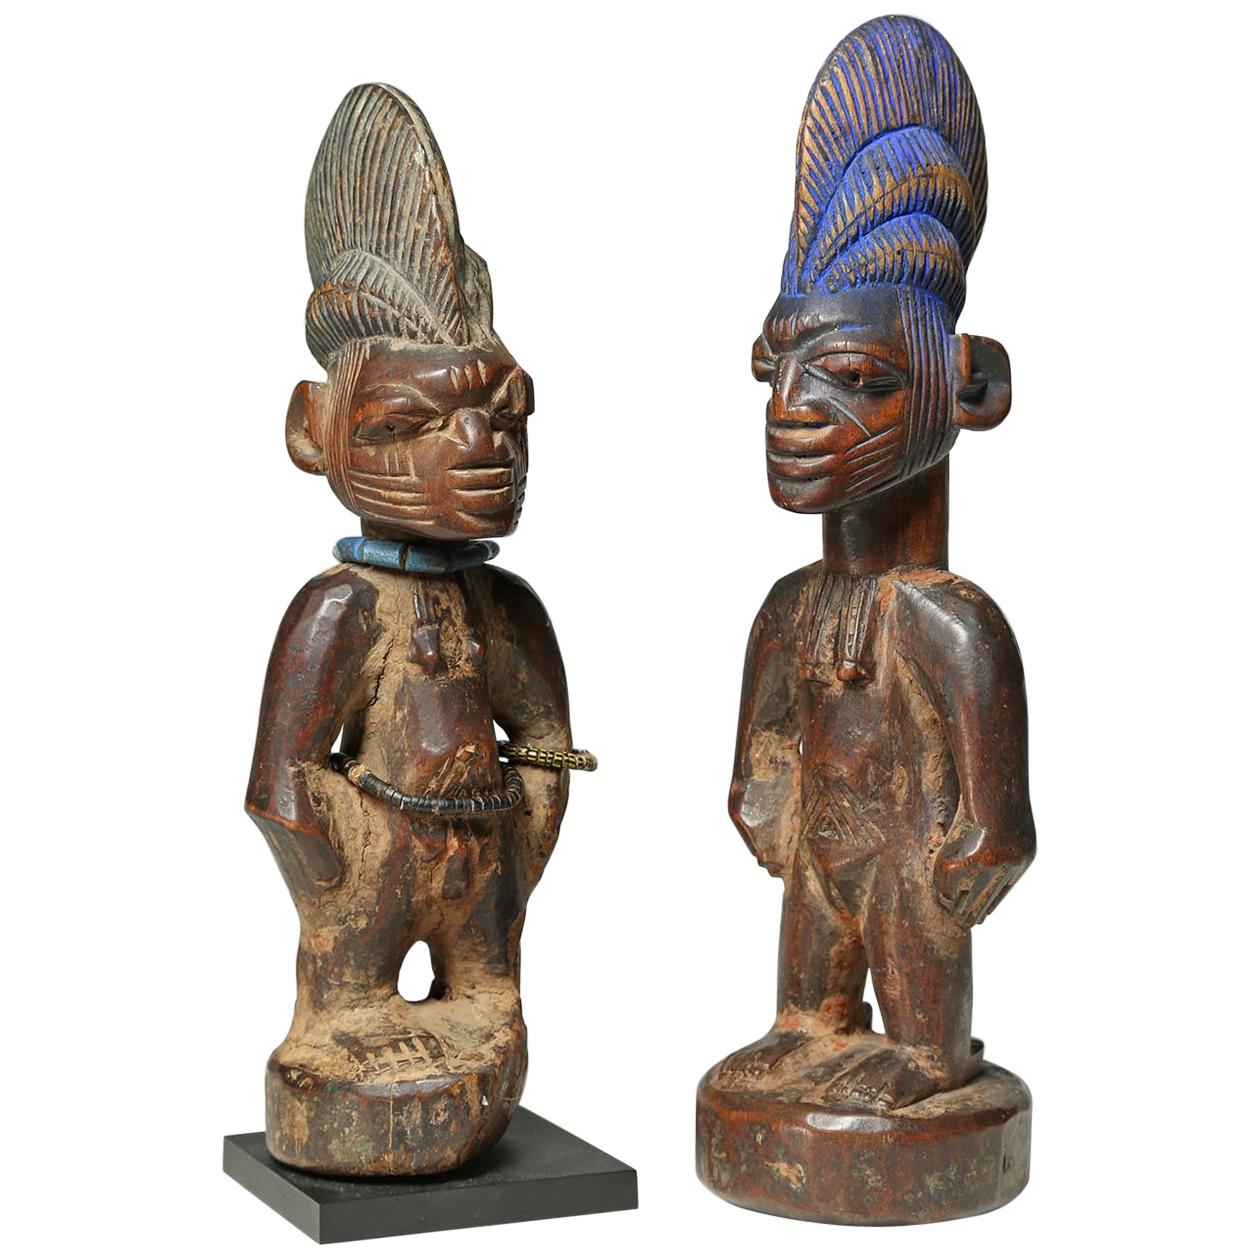 Two Early Yoruba Tribal Ibeji "Twin" Figures, Nigera, Early 20th Century